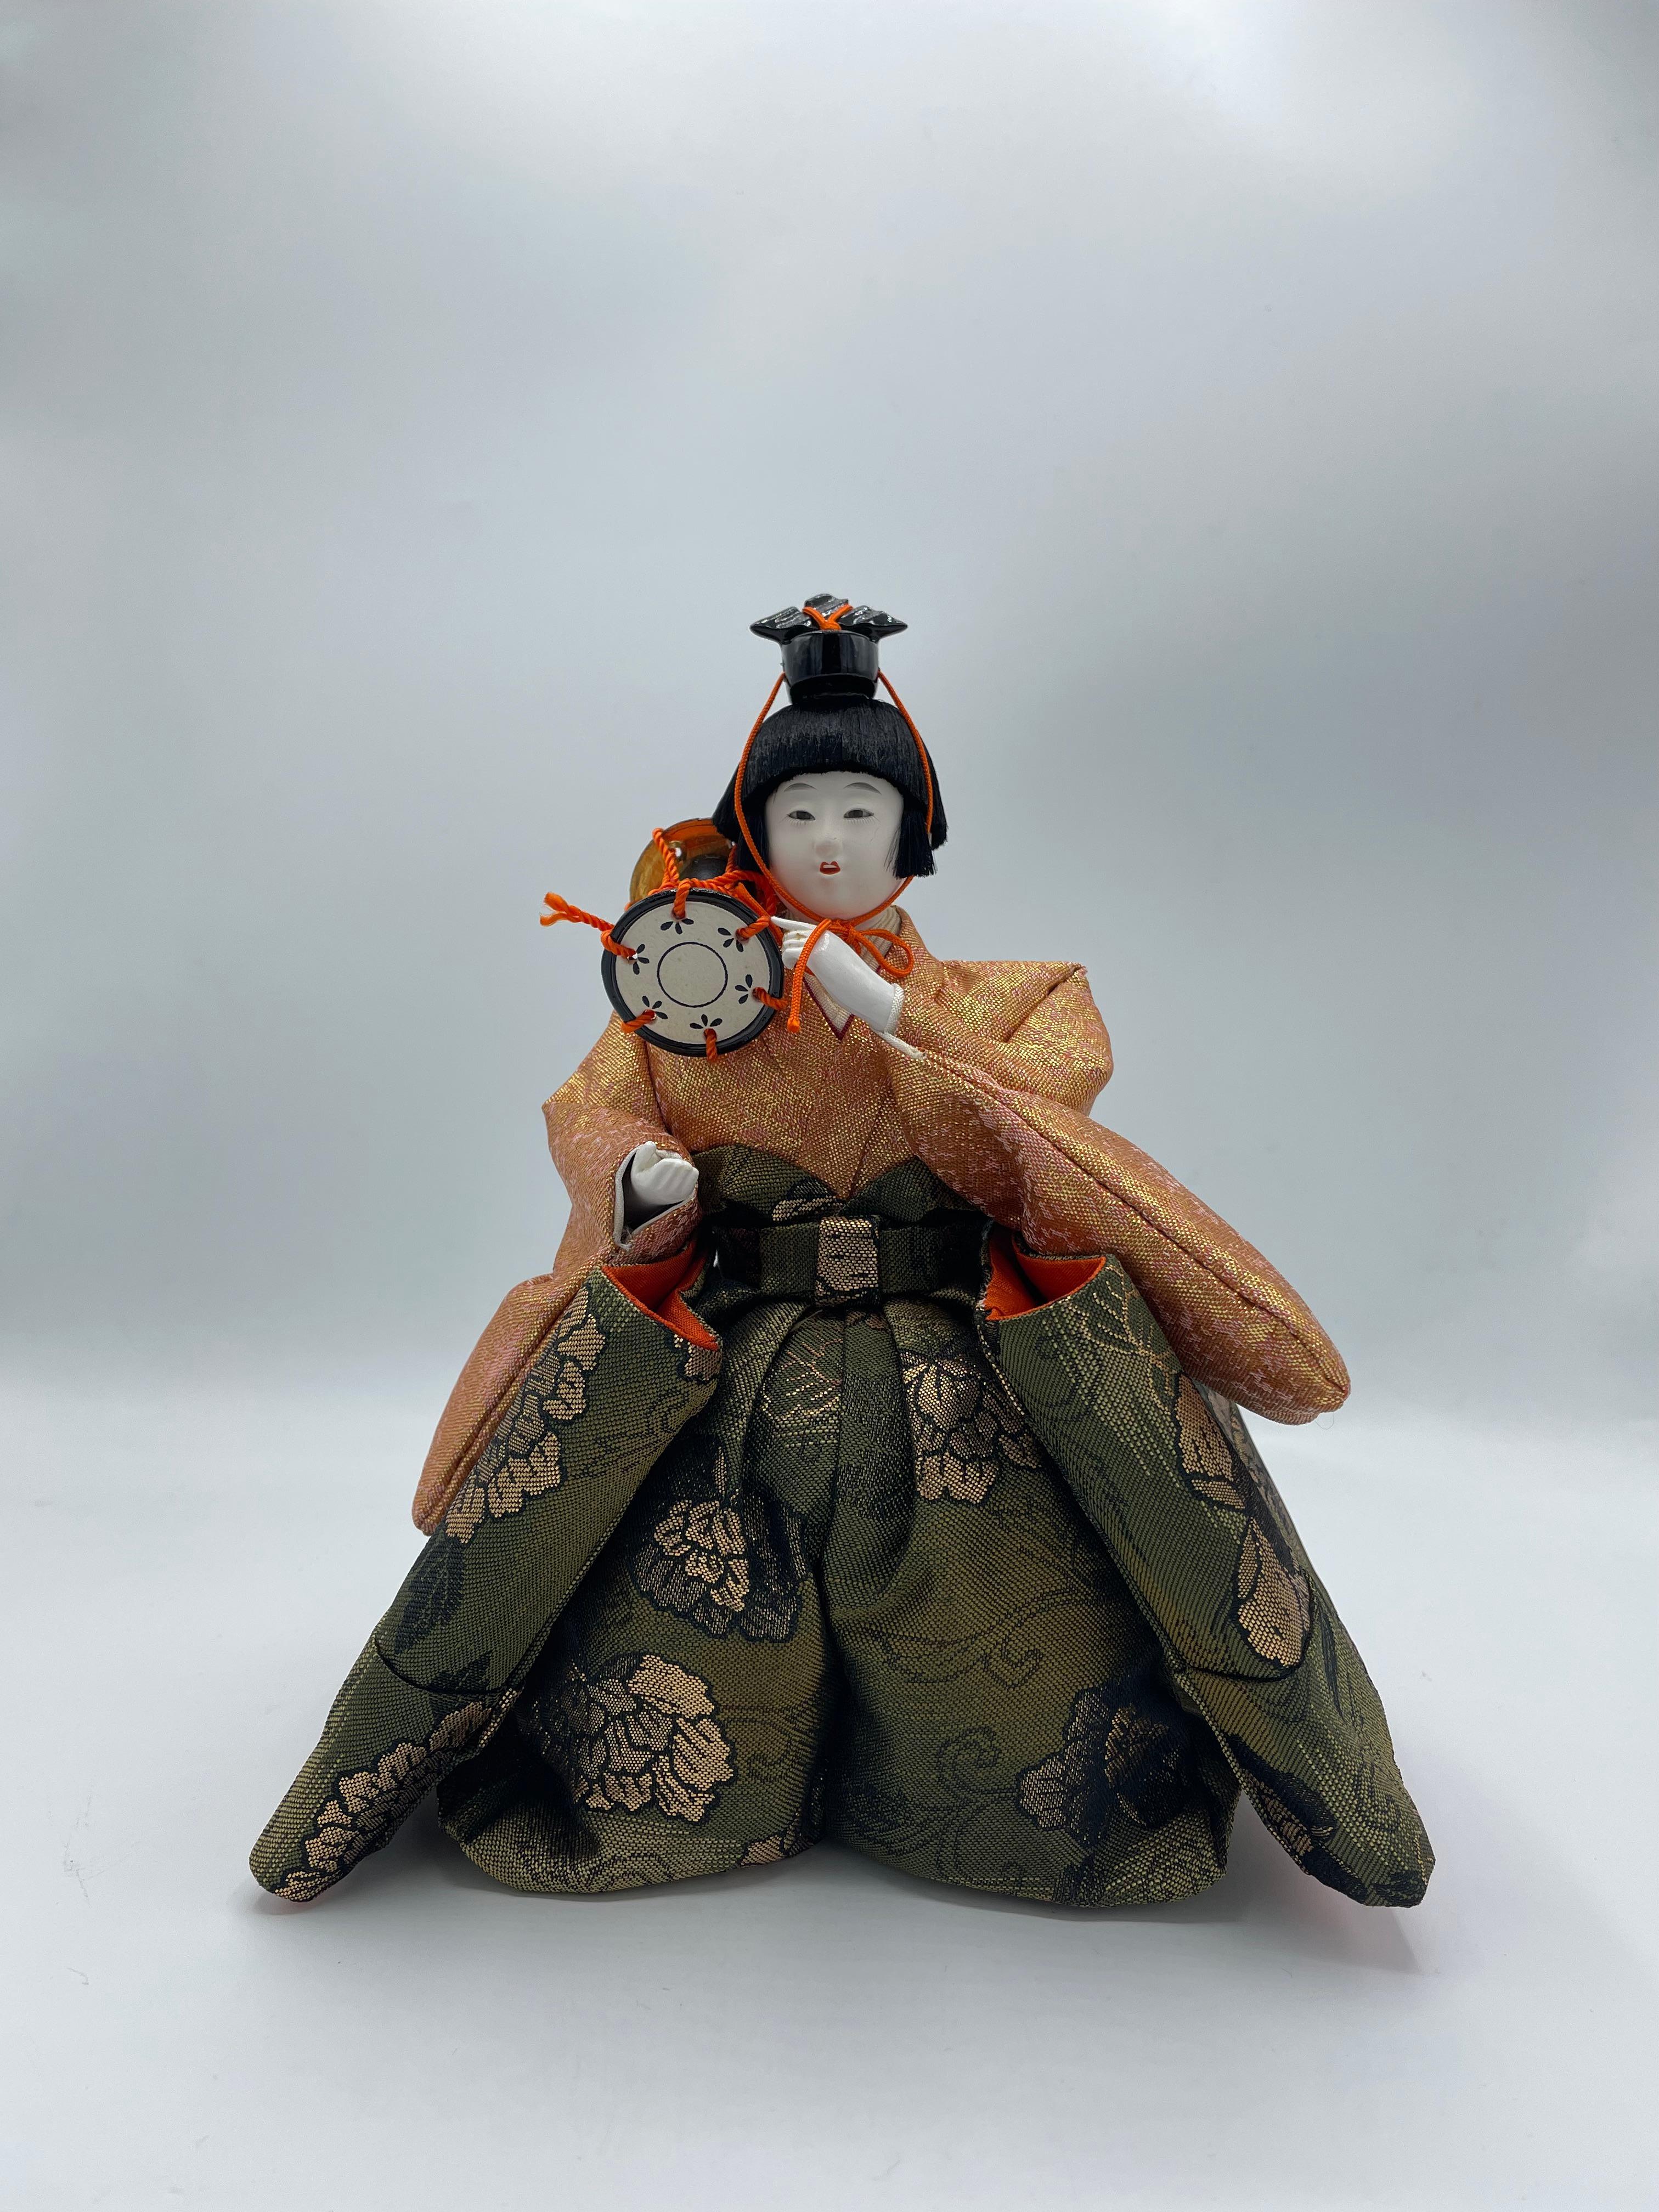 Dies ist eine Puppe, die wir für den Hinamatsuri-Tag verwenden. Diese Person ist einer von Goninbayashi.
Diese Person hat ein Schlagzeug. Diese Puppe wurde aus Plastik, Baumwolle und Seide hergestellt. Diese Puppe wurde in den 1980er Jahren in der